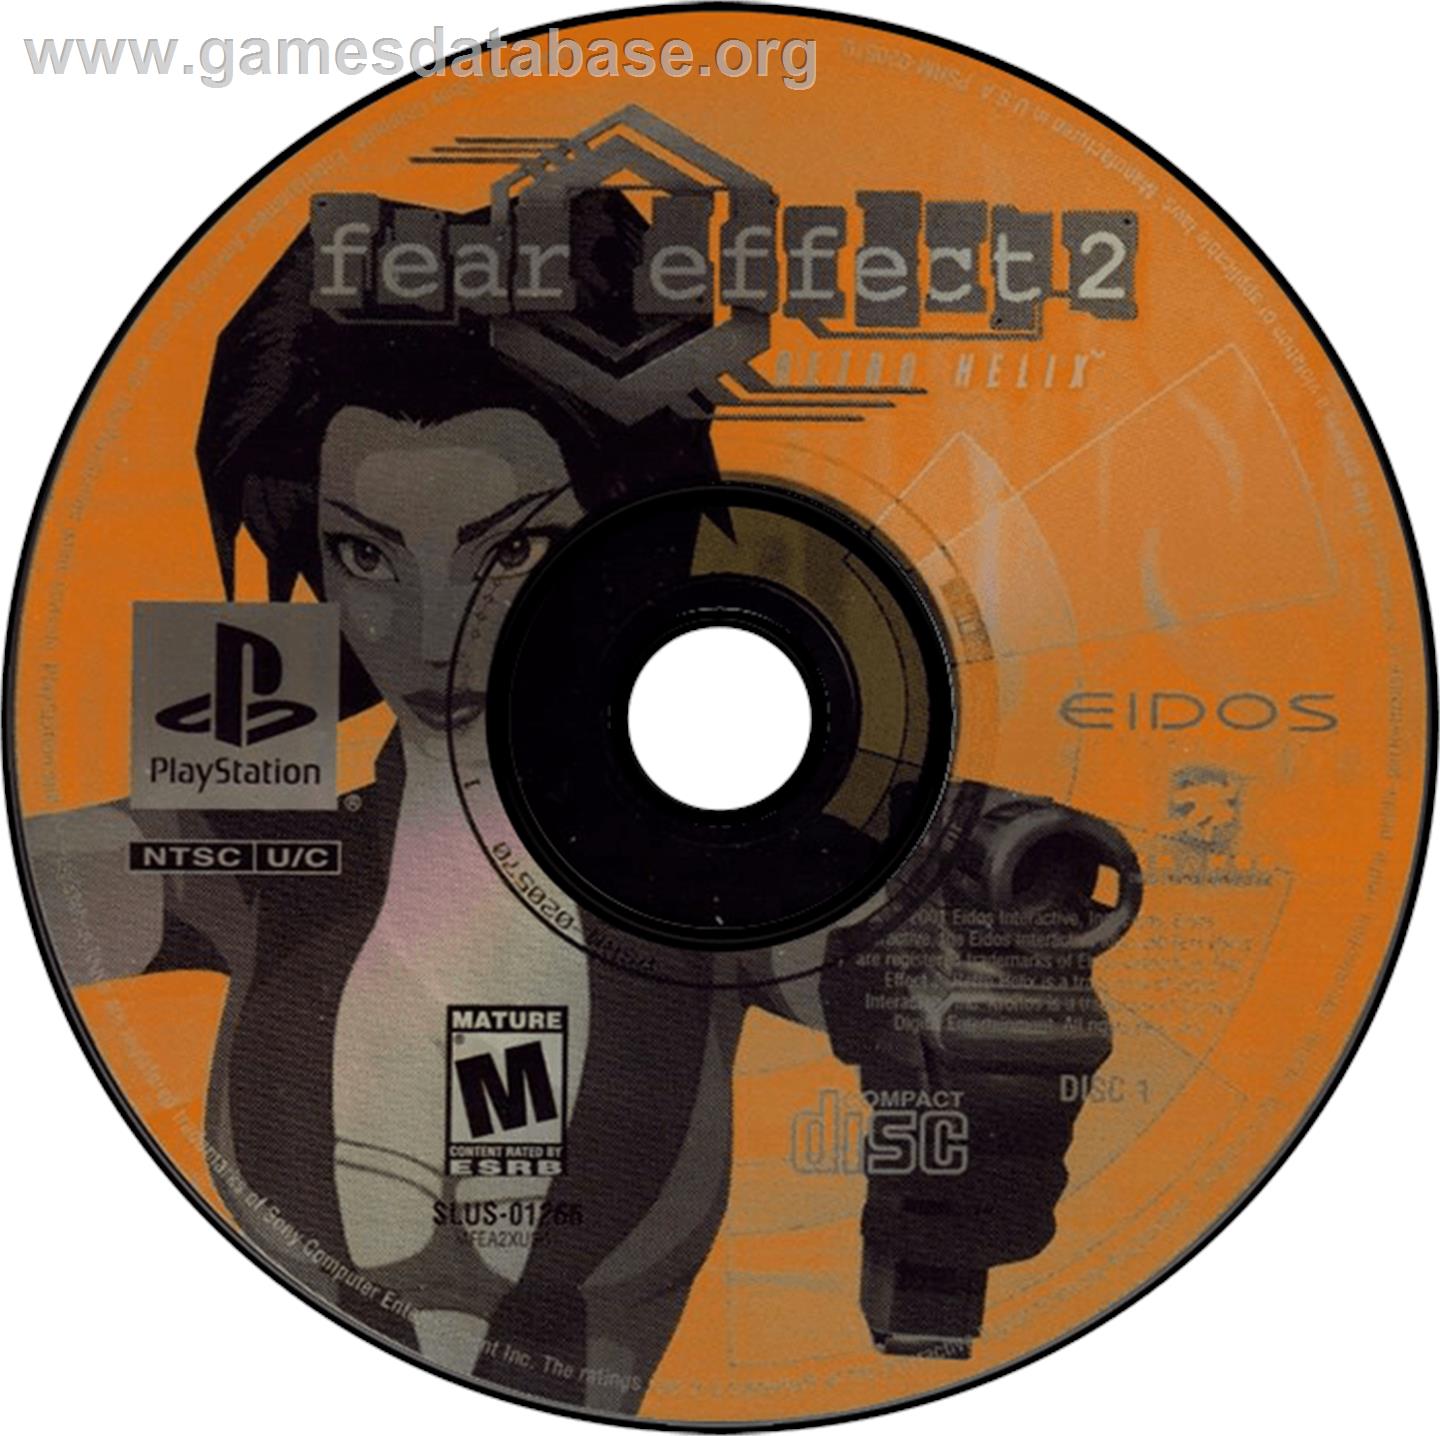 Fear Effect 2: Retro Helix - Sony Playstation - Artwork - Disc